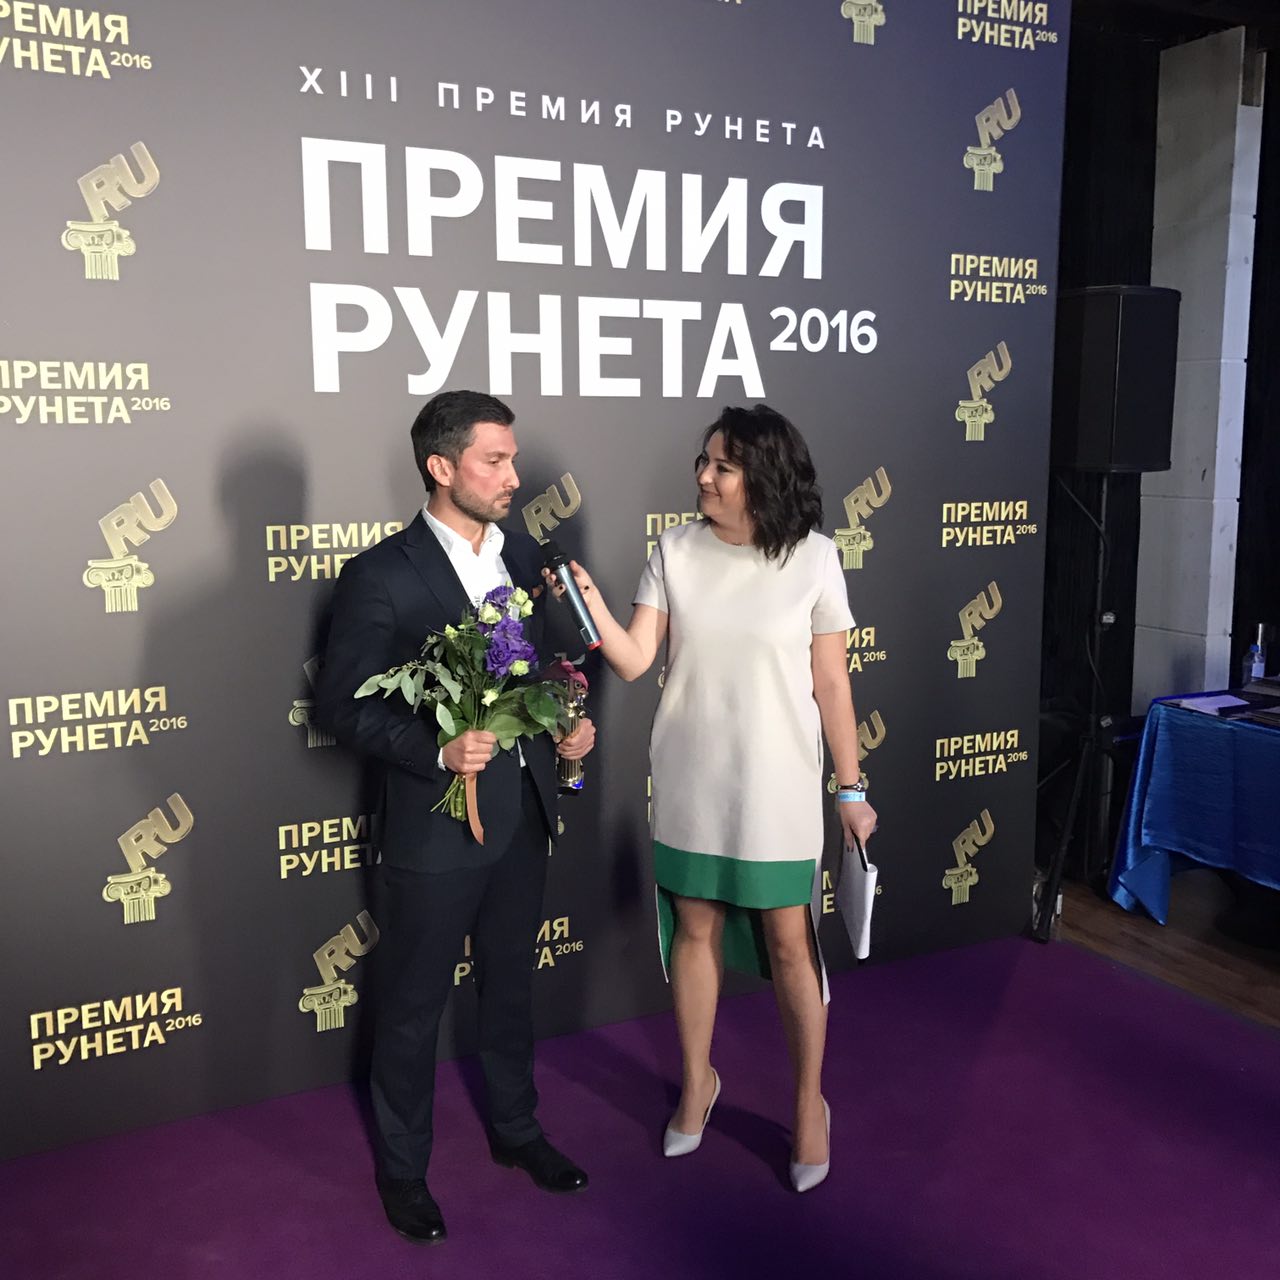 Иннополис получил премию Рунета за запуск города